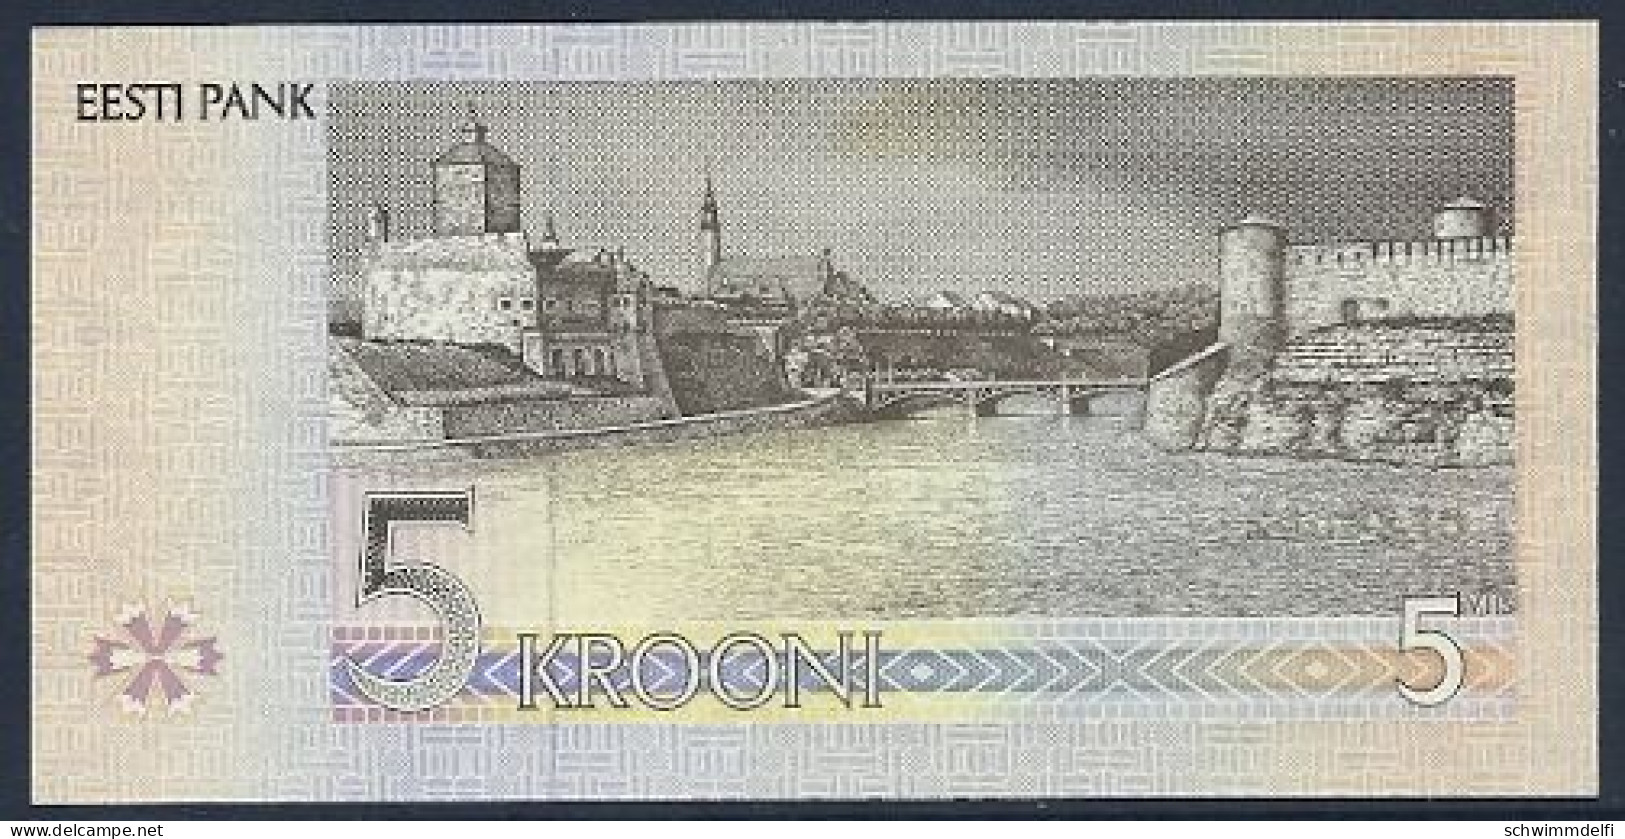 ESTLAND - ESTONIA - 5 KROONI 1994 - SIN CIRCULAR - UNZ. - UNC. - Estland